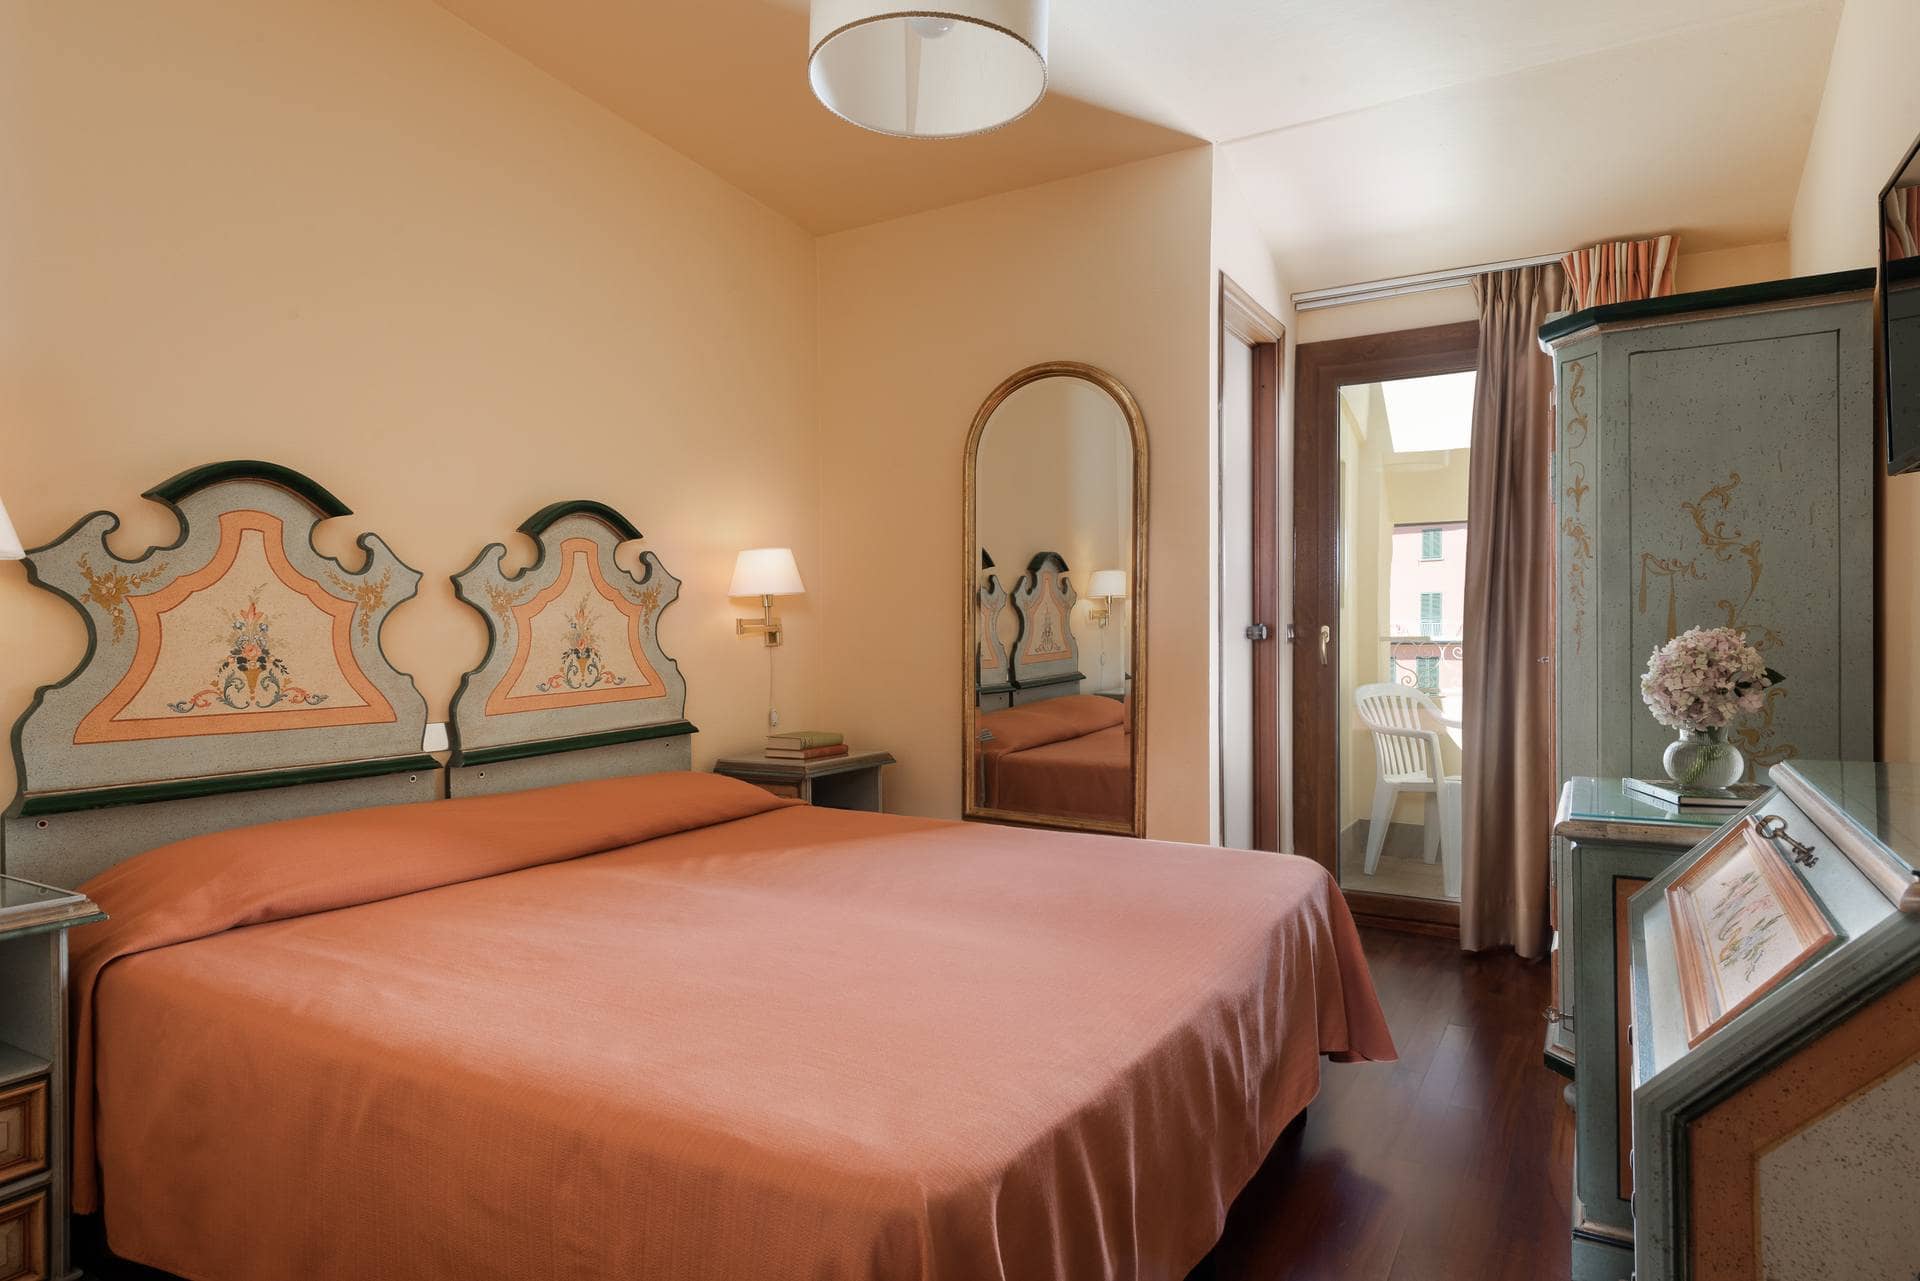 Parma E Oriente Montecatini Camere Hotel Economy 02